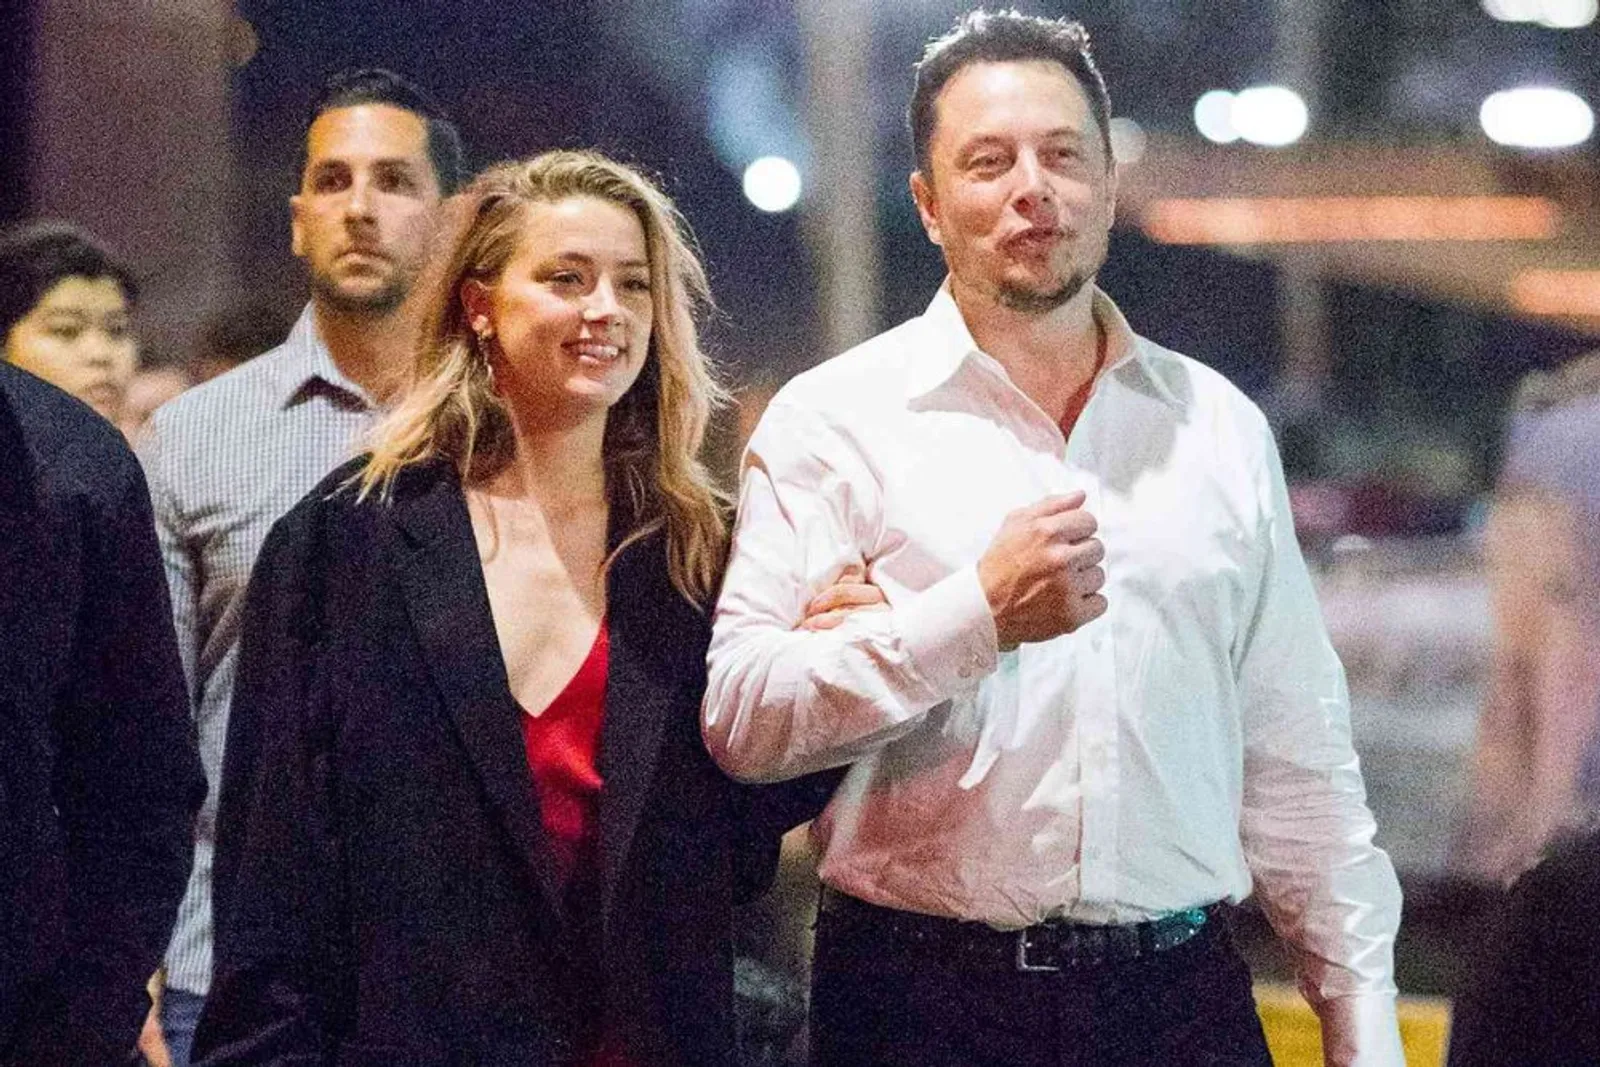 Penuh Drama, Begini Kisah Cinta Elon Musk dan Amber Heard yang Toxic